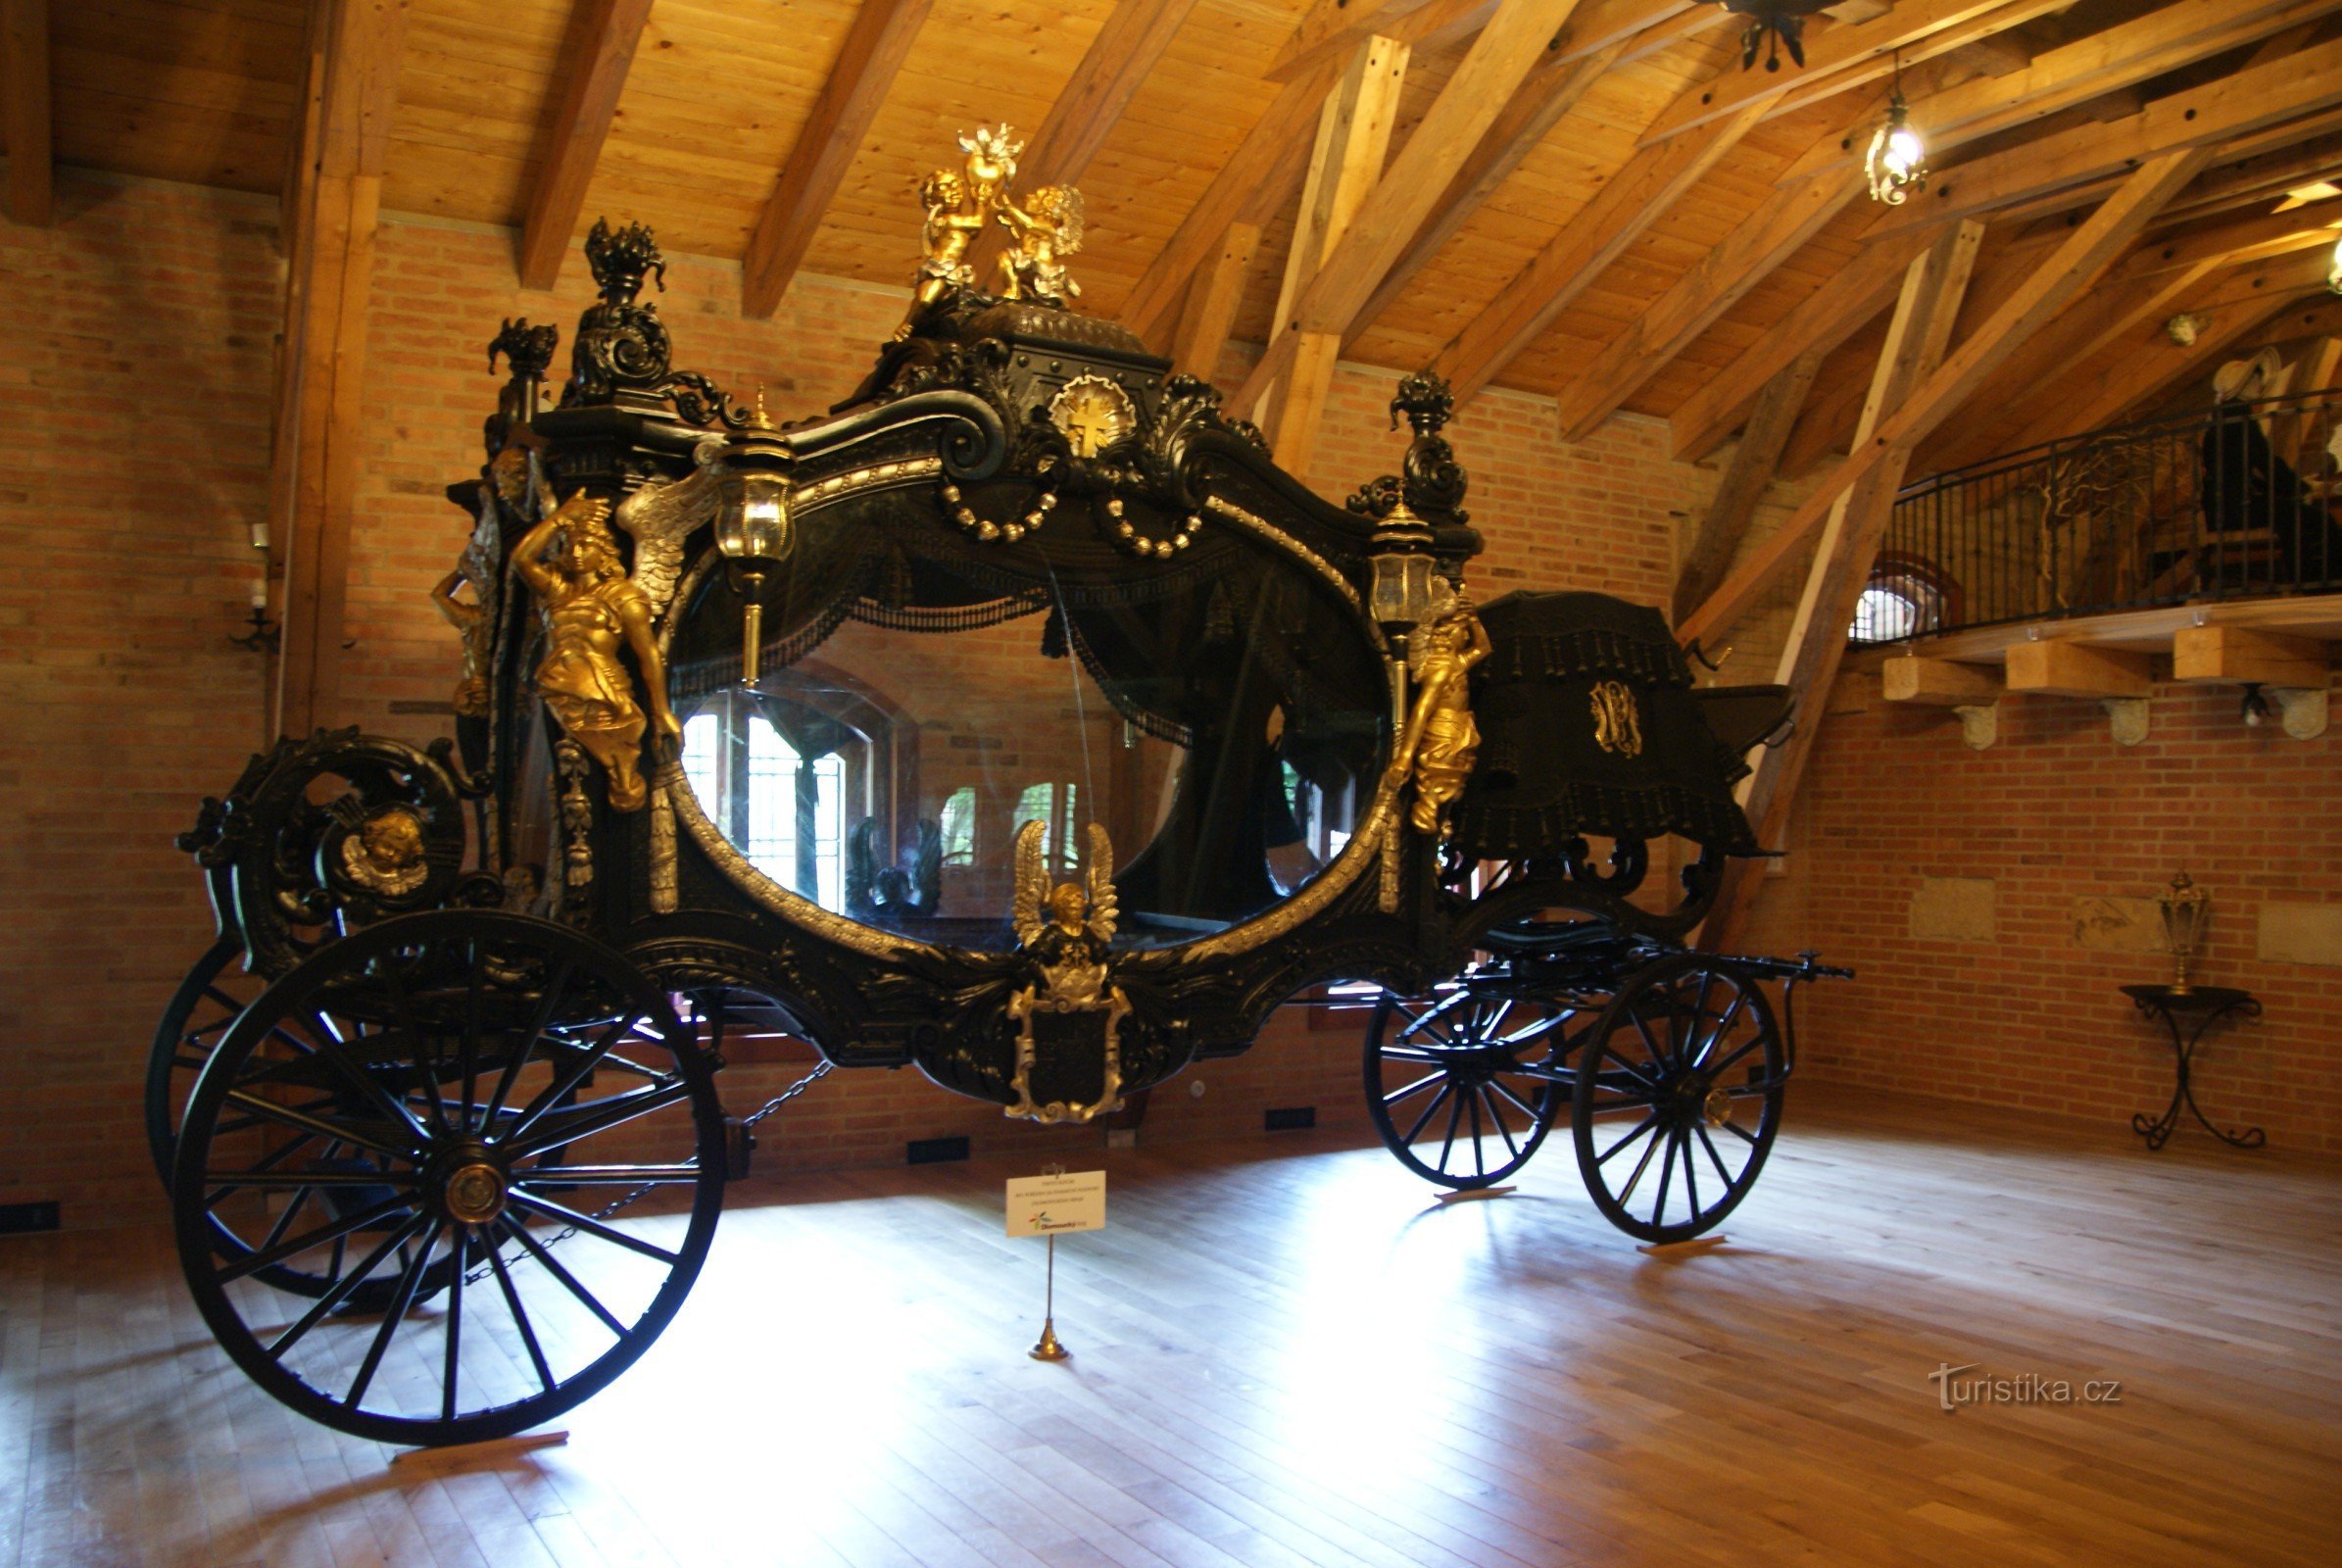 Bohemia under Kosíř - največji mrliški voz na svetu (muzej kočij)